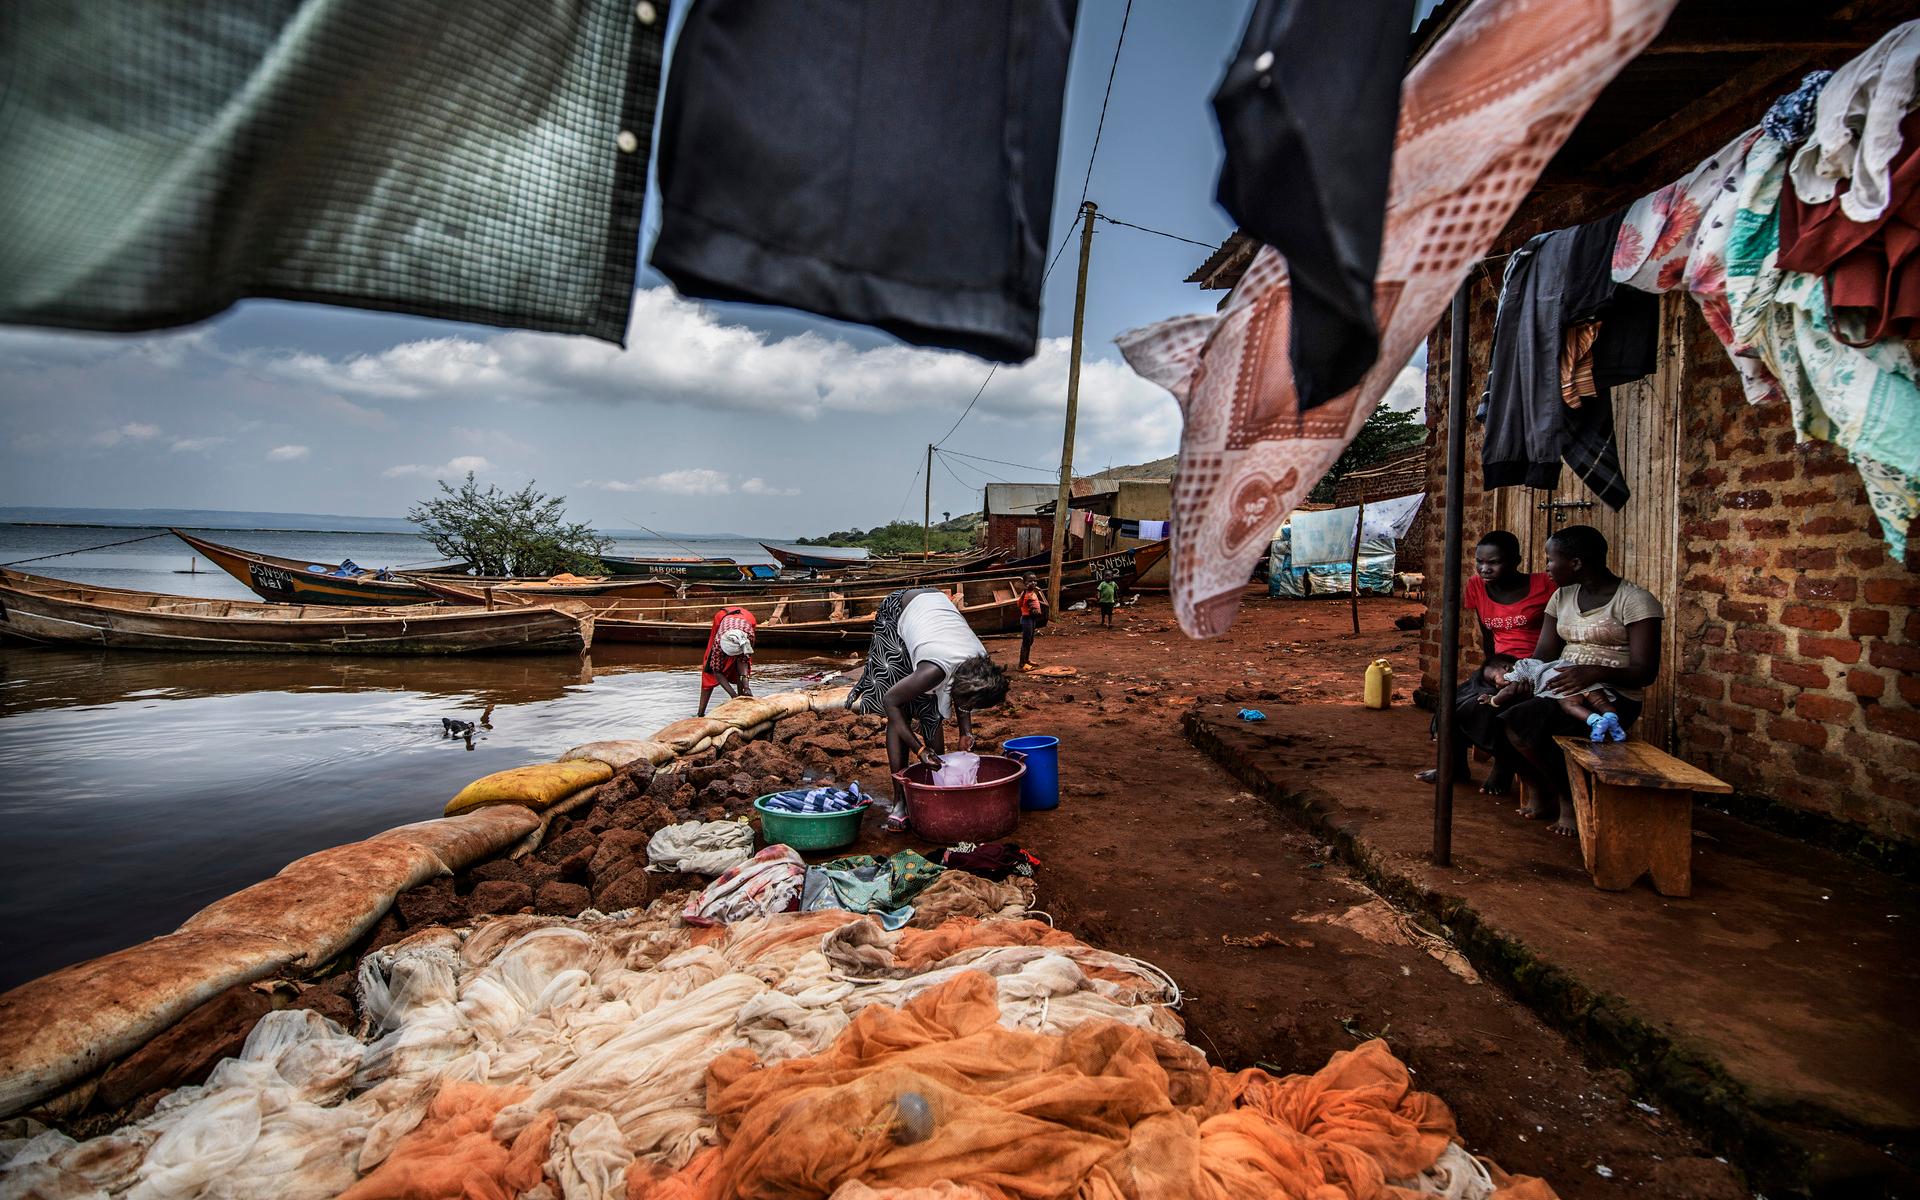 I fiskeläget Busana tvättar kvinnor kläder i plastbaljor vid Victoriasjöns strand, intill fiskenät som bretts ut för översyn. De allra flesta försöker åtminstone ta sitt dricksvatten från automaterna – om de har råd. Har man inga pengar finns inget val. 